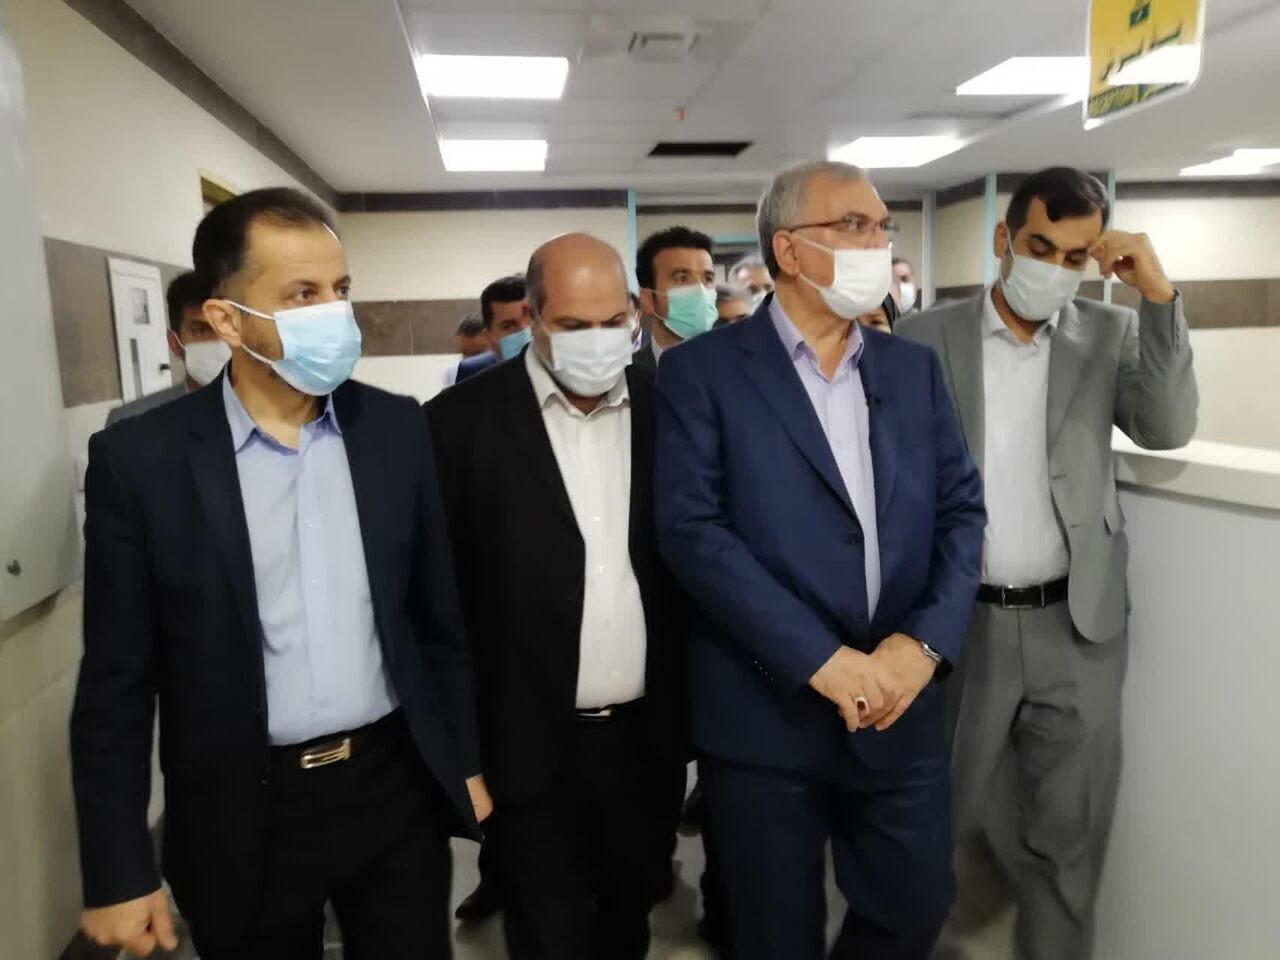 ملک میں کورونا وائرس کی شرح کم ہو رہی ہے: ایرانی وزیر صحت